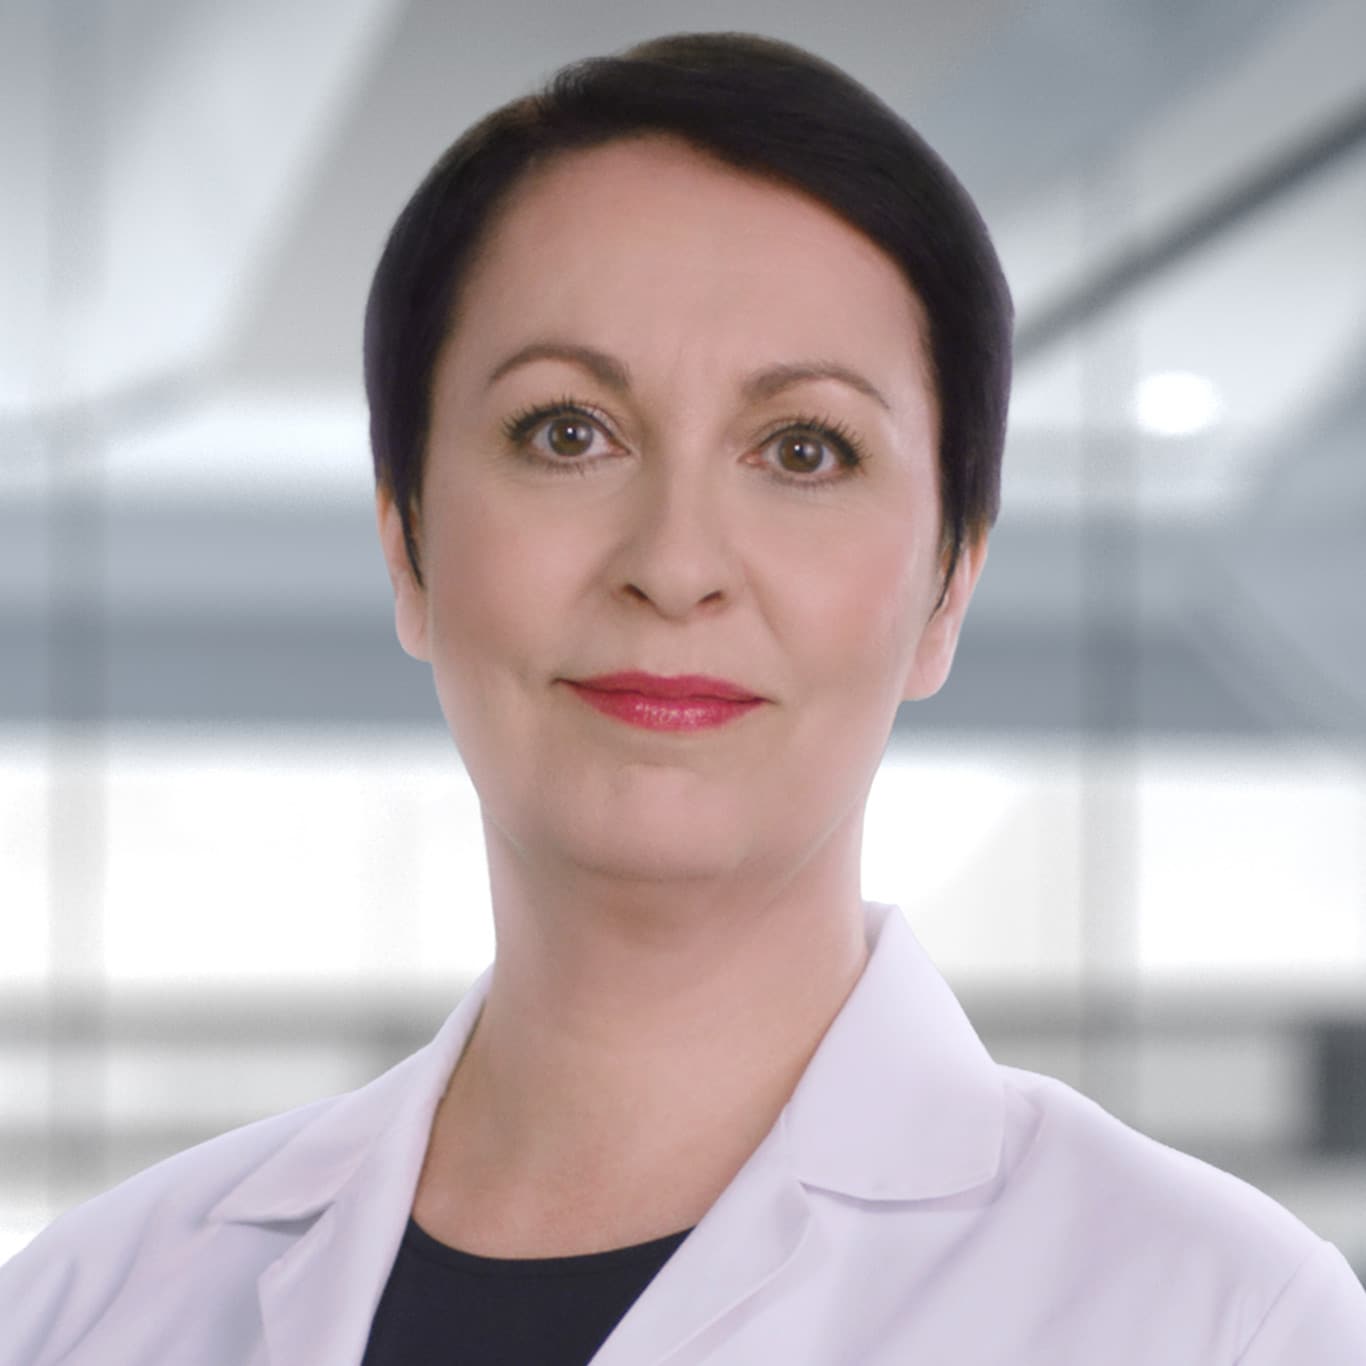 Dr. Nadine Pernodet